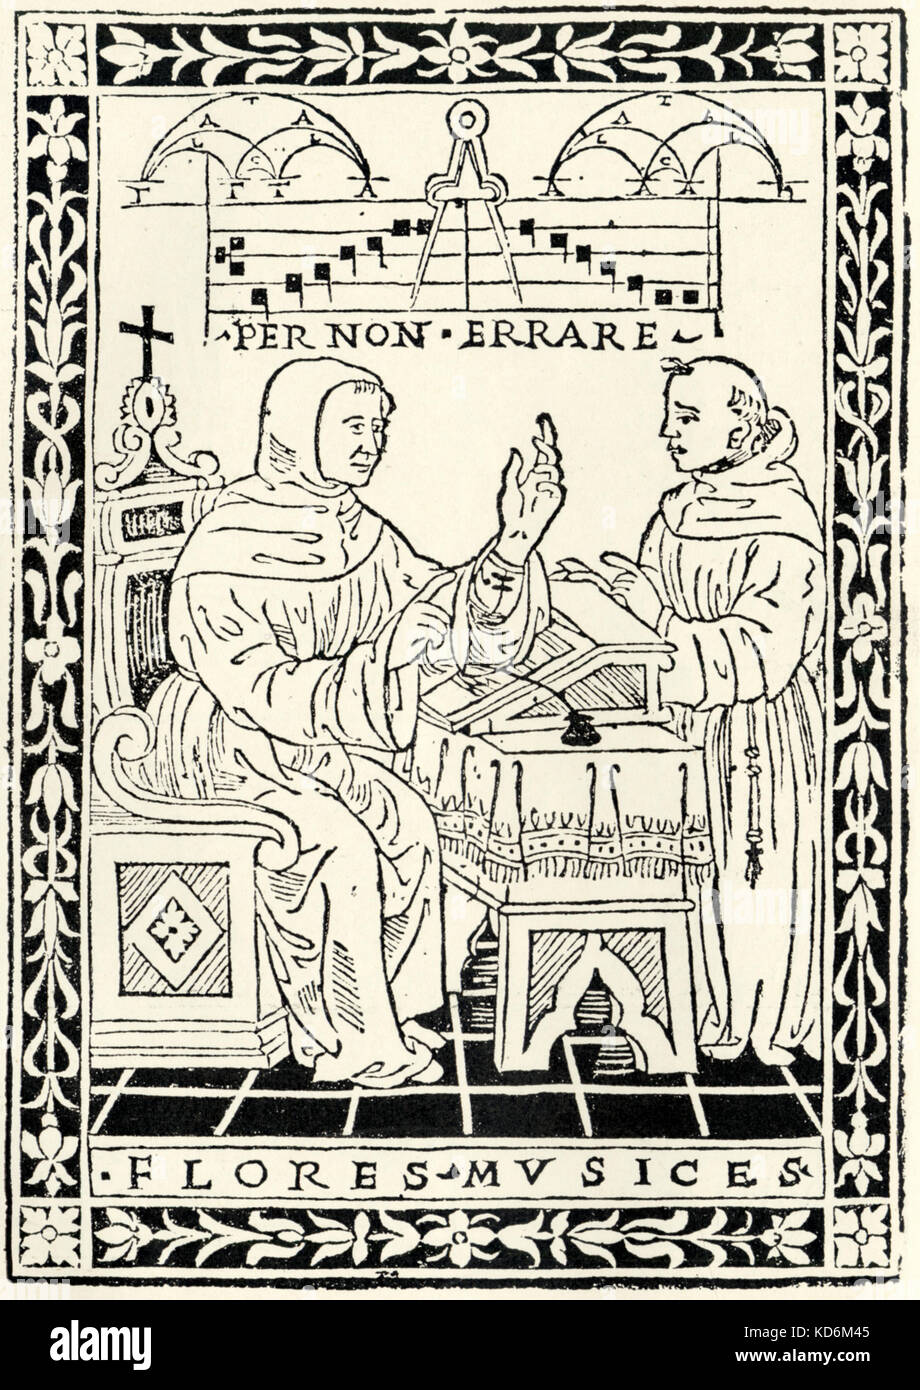 Pietro di l' Cannuzi encore de traité, ' Regule Florum Musices ', Florence, 1510. Gravure sur bois de la Renaissance, montrant les moines de bureau. La théorie de la musique. Banque D'Images